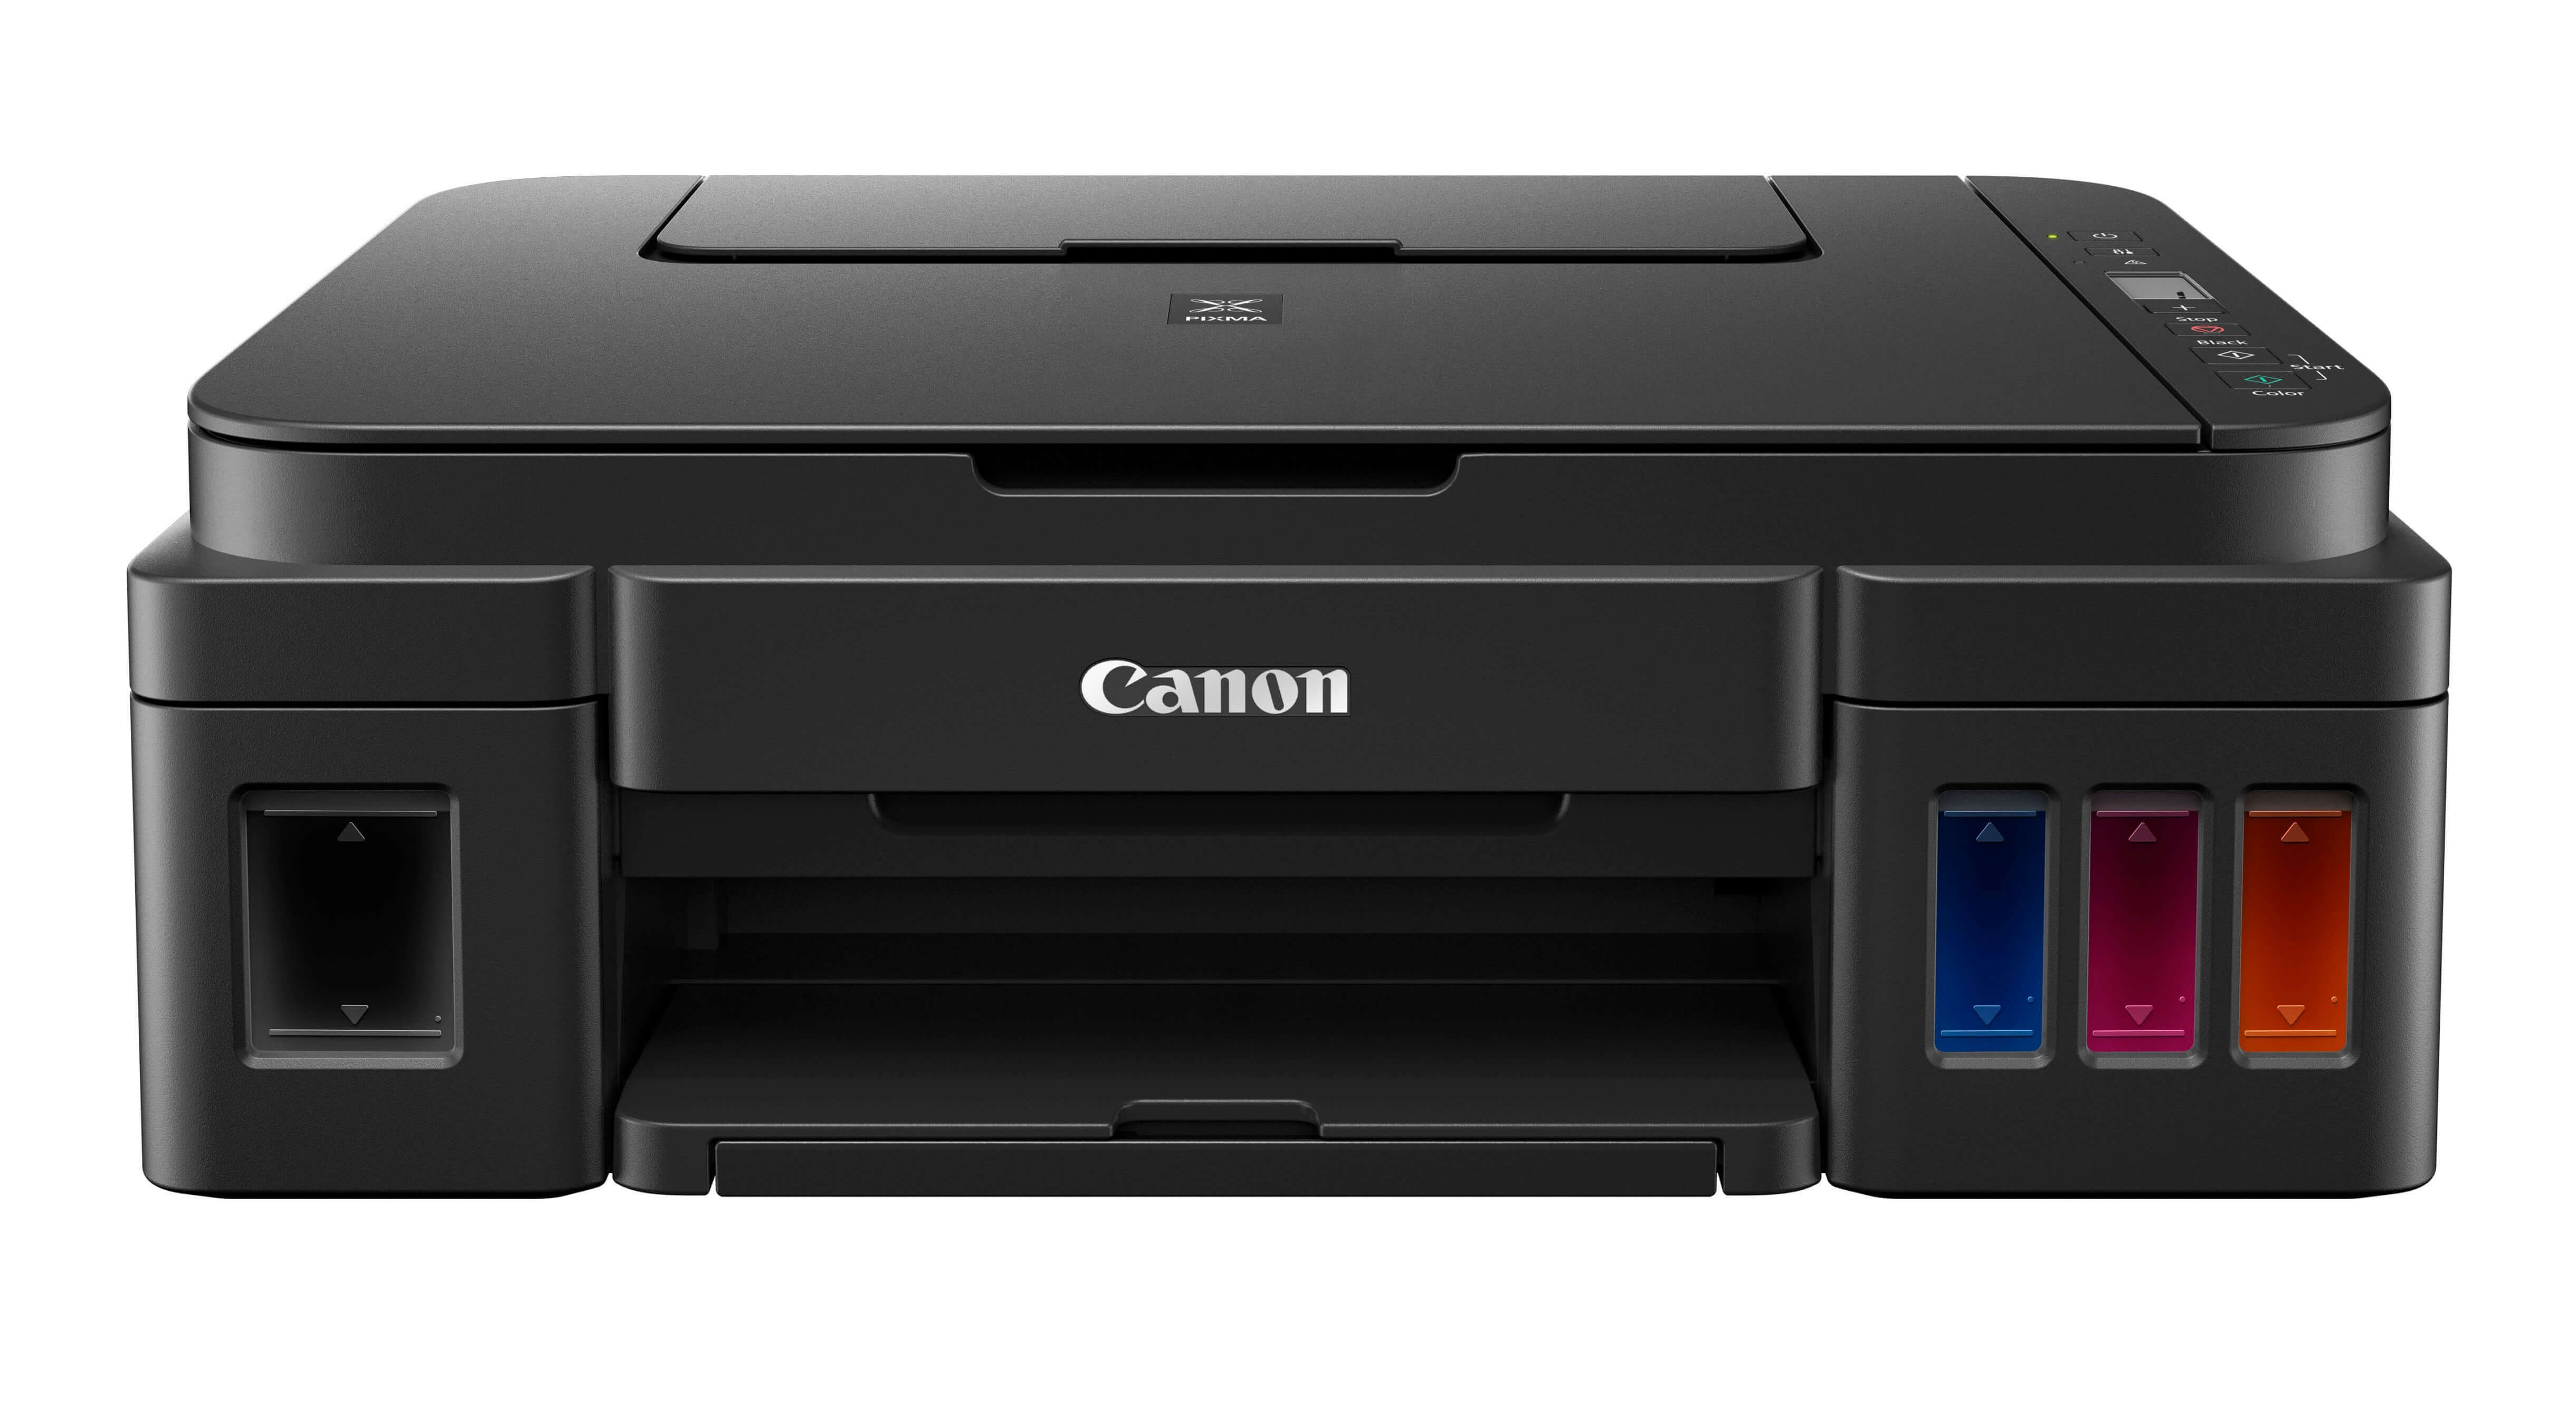 driver printer canon g2010 series